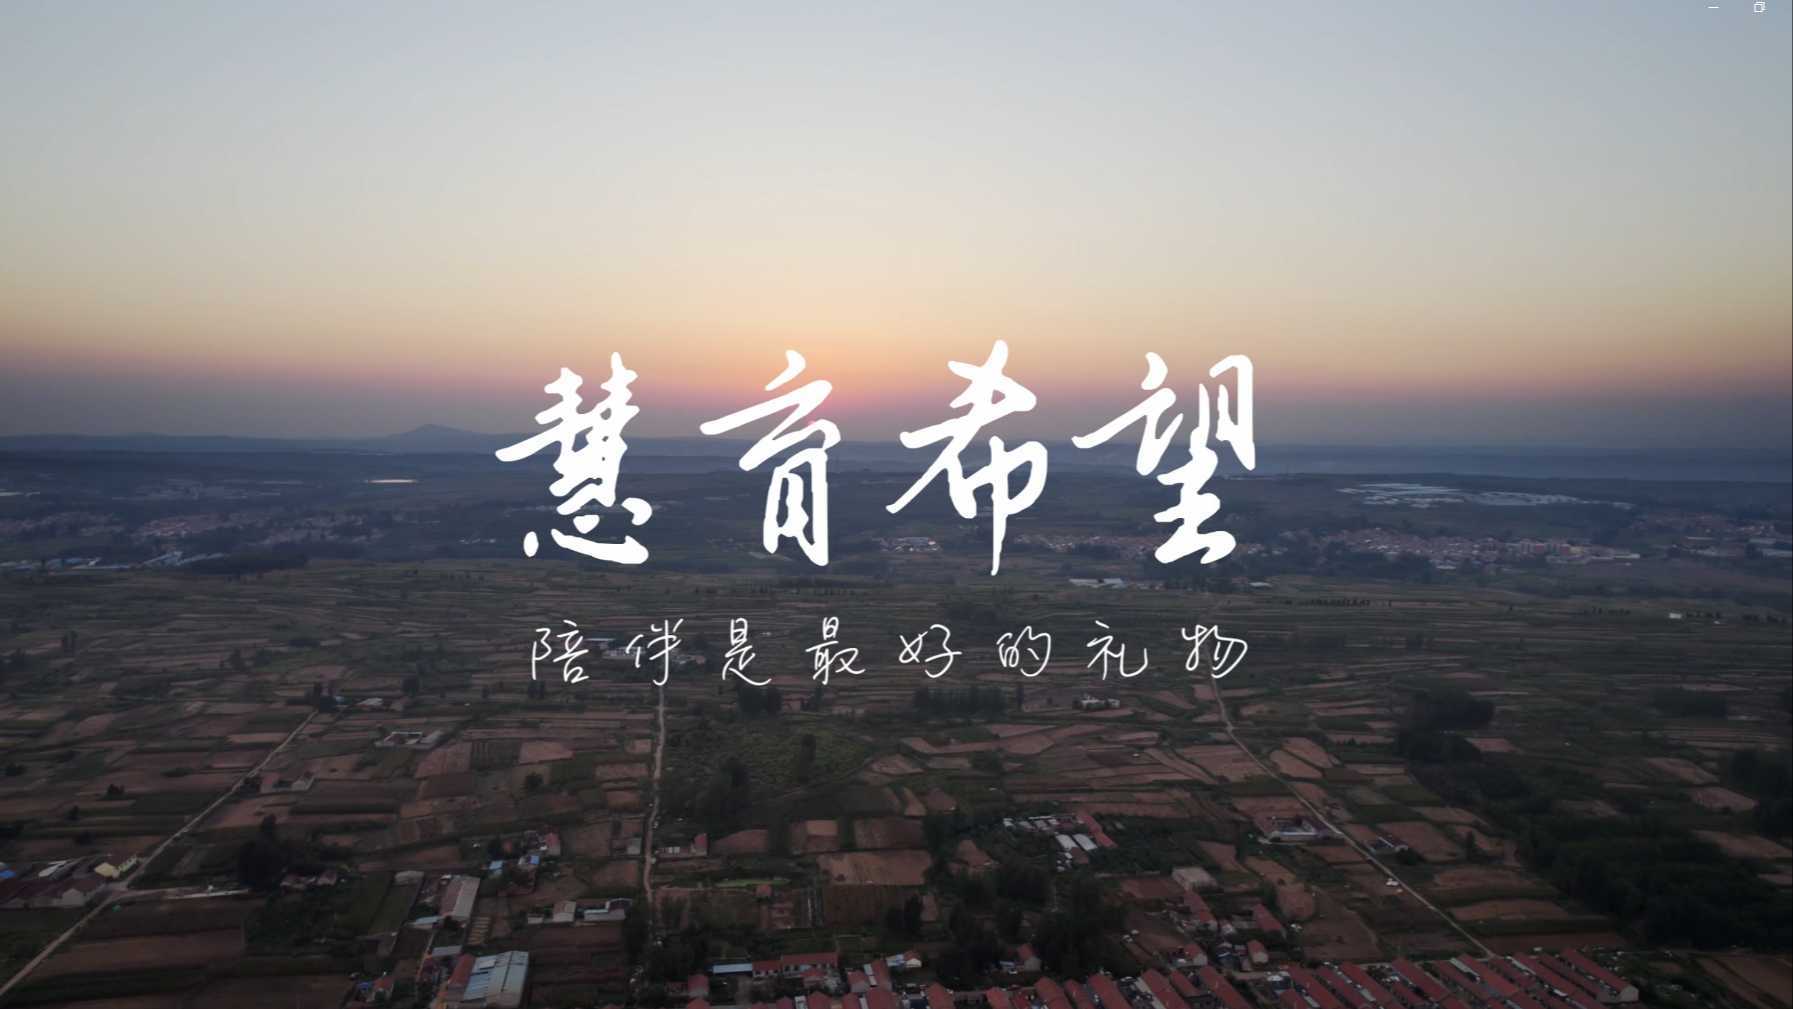 北京陈江和公益基金会“0-3儿童期发展”纪录片 《慧育希望》